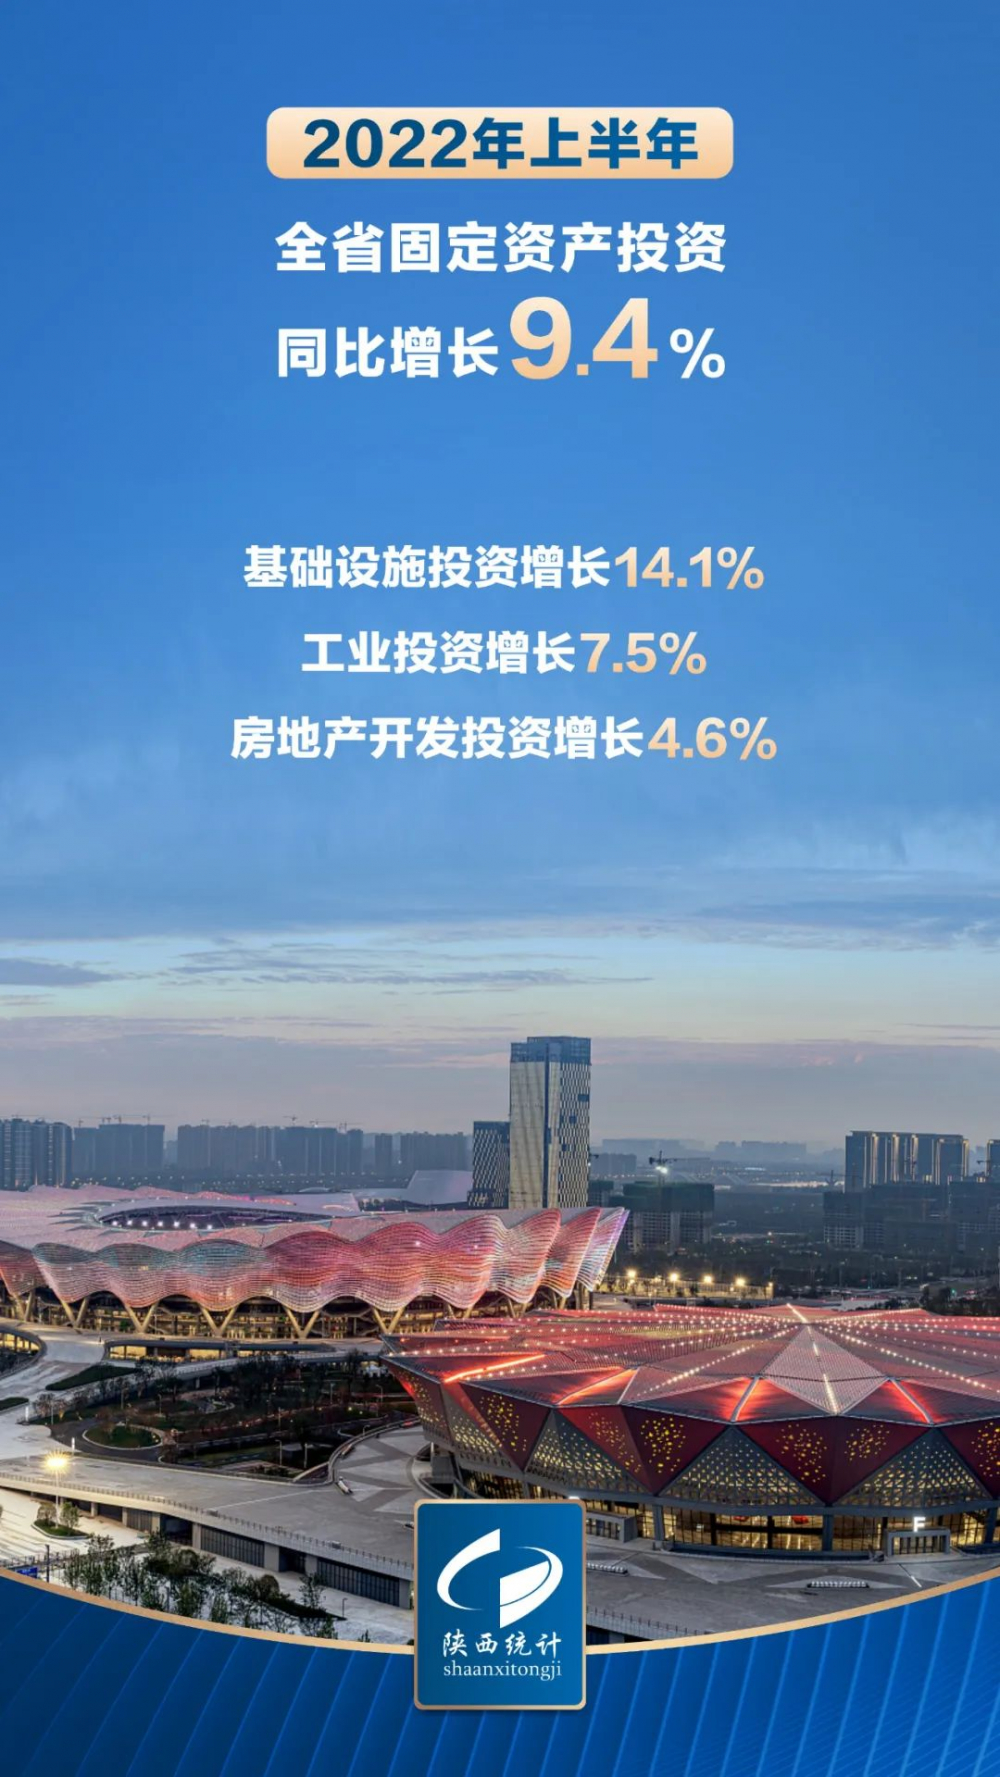 刚刚,2022年上半年陕西省国民经济运行情况发布